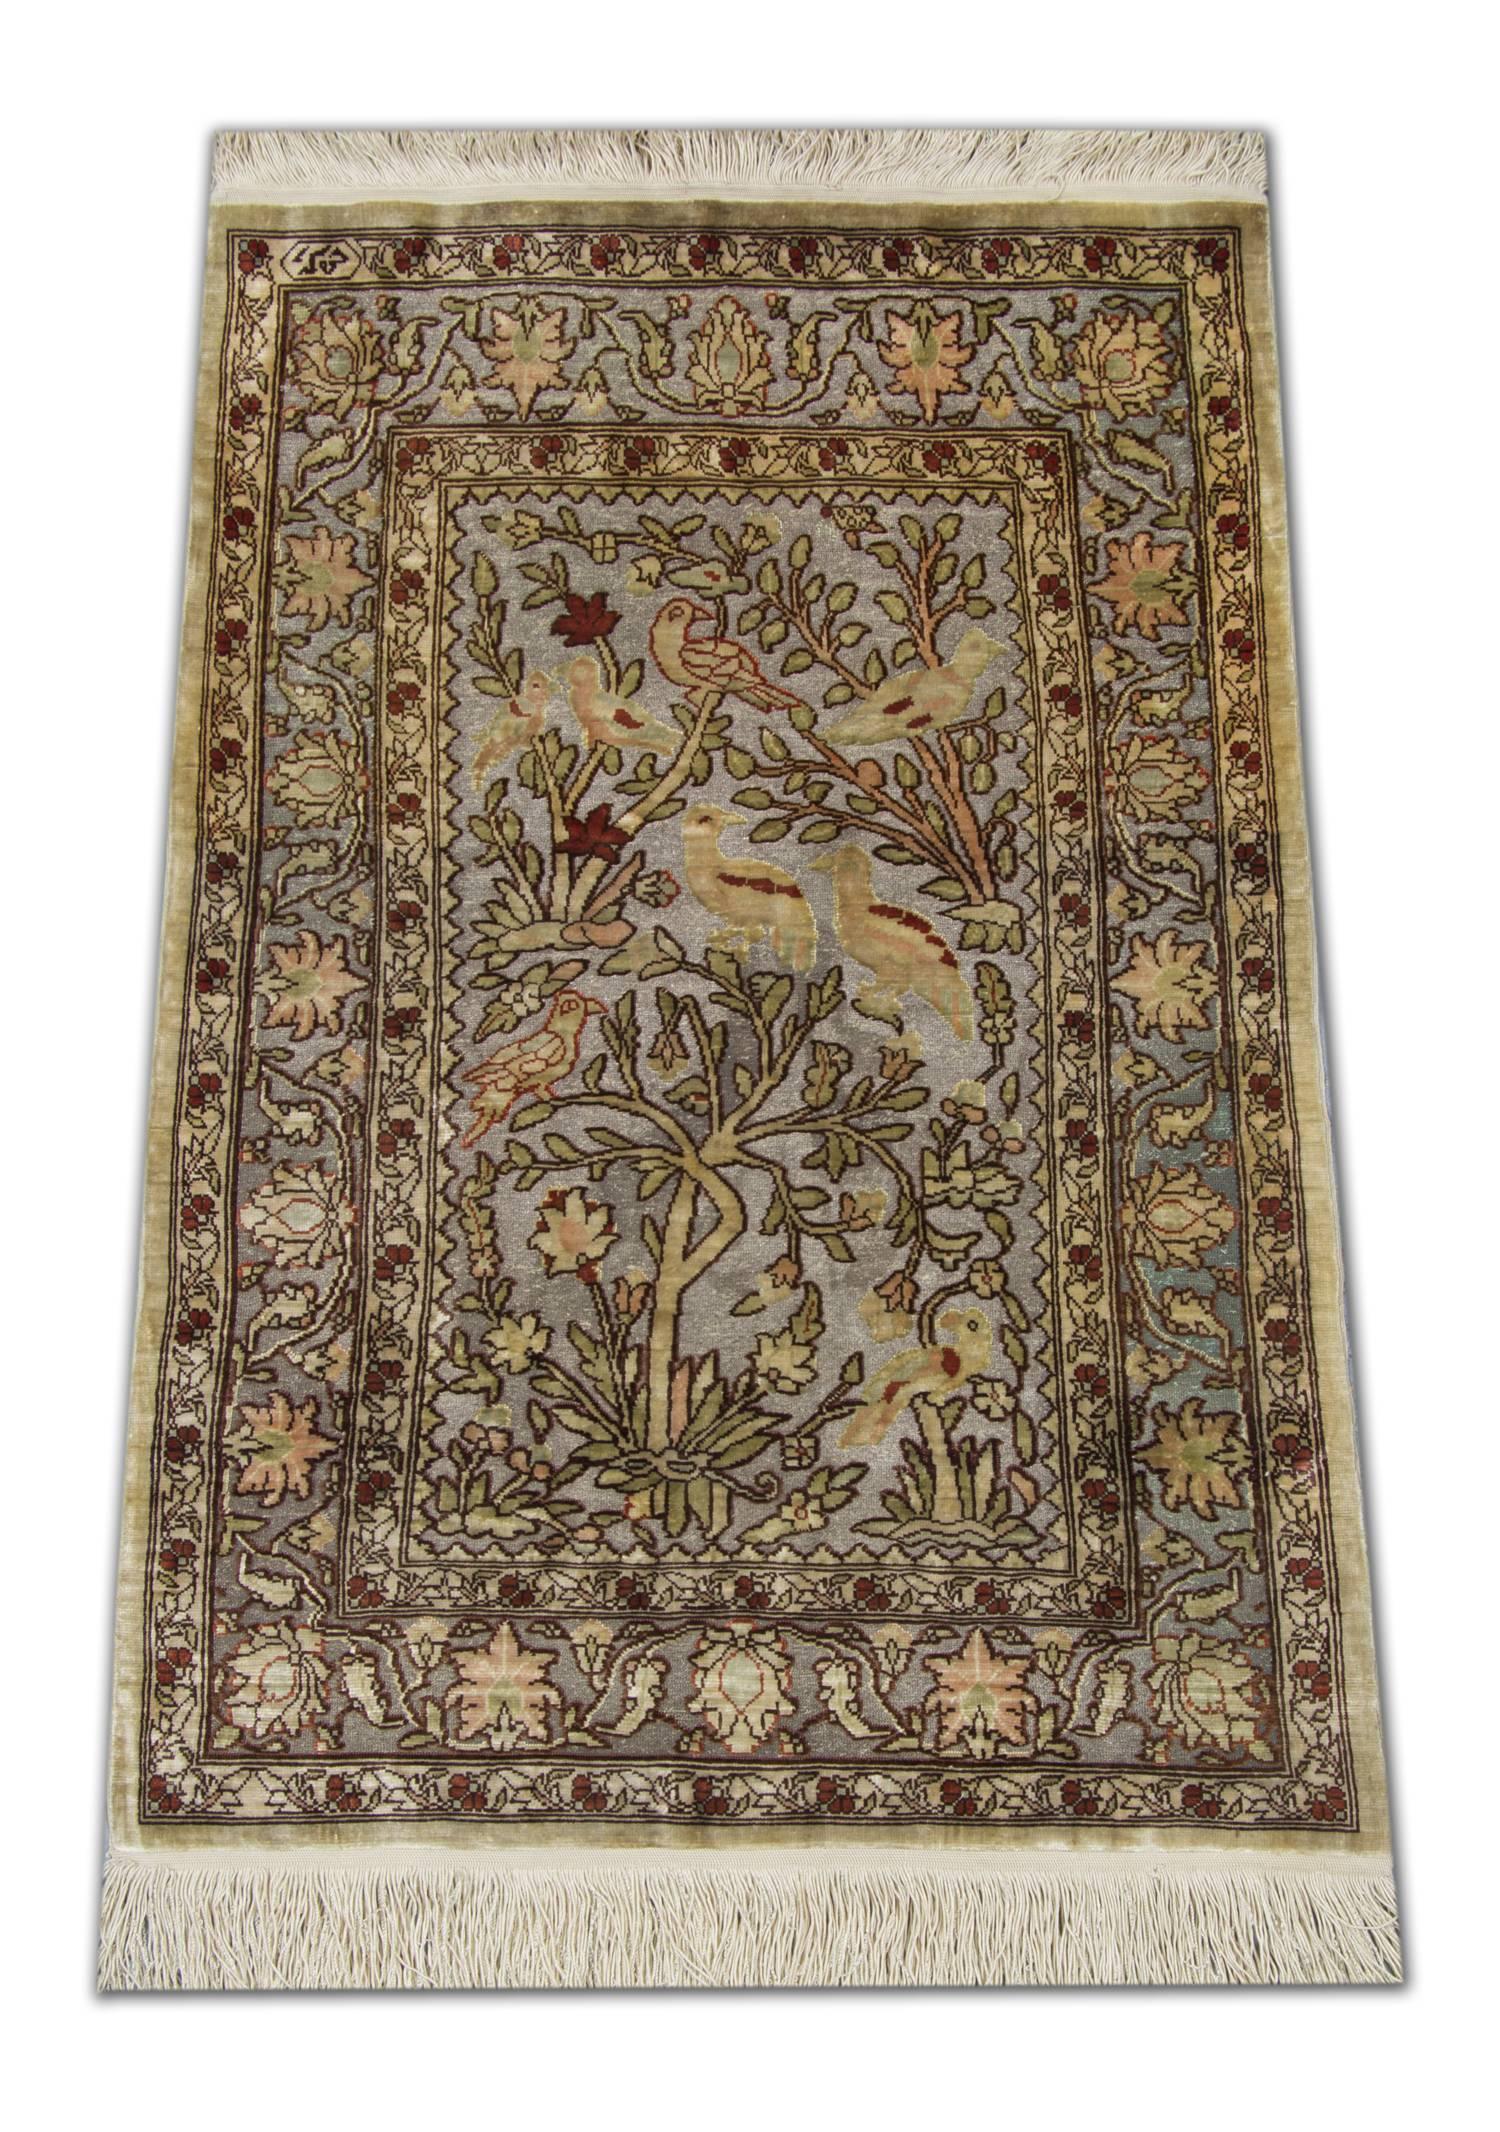 Ce tapis d'Orient à vendre a été tissé en Anatolie asiatique, en Turquie, dans la ville historique de Hereke. Au milieu du XIXe siècle, le sultan Abdul Majid a proclamé Hereke village royal du tissage. Les petits tapis qui y étaient tissés étaient